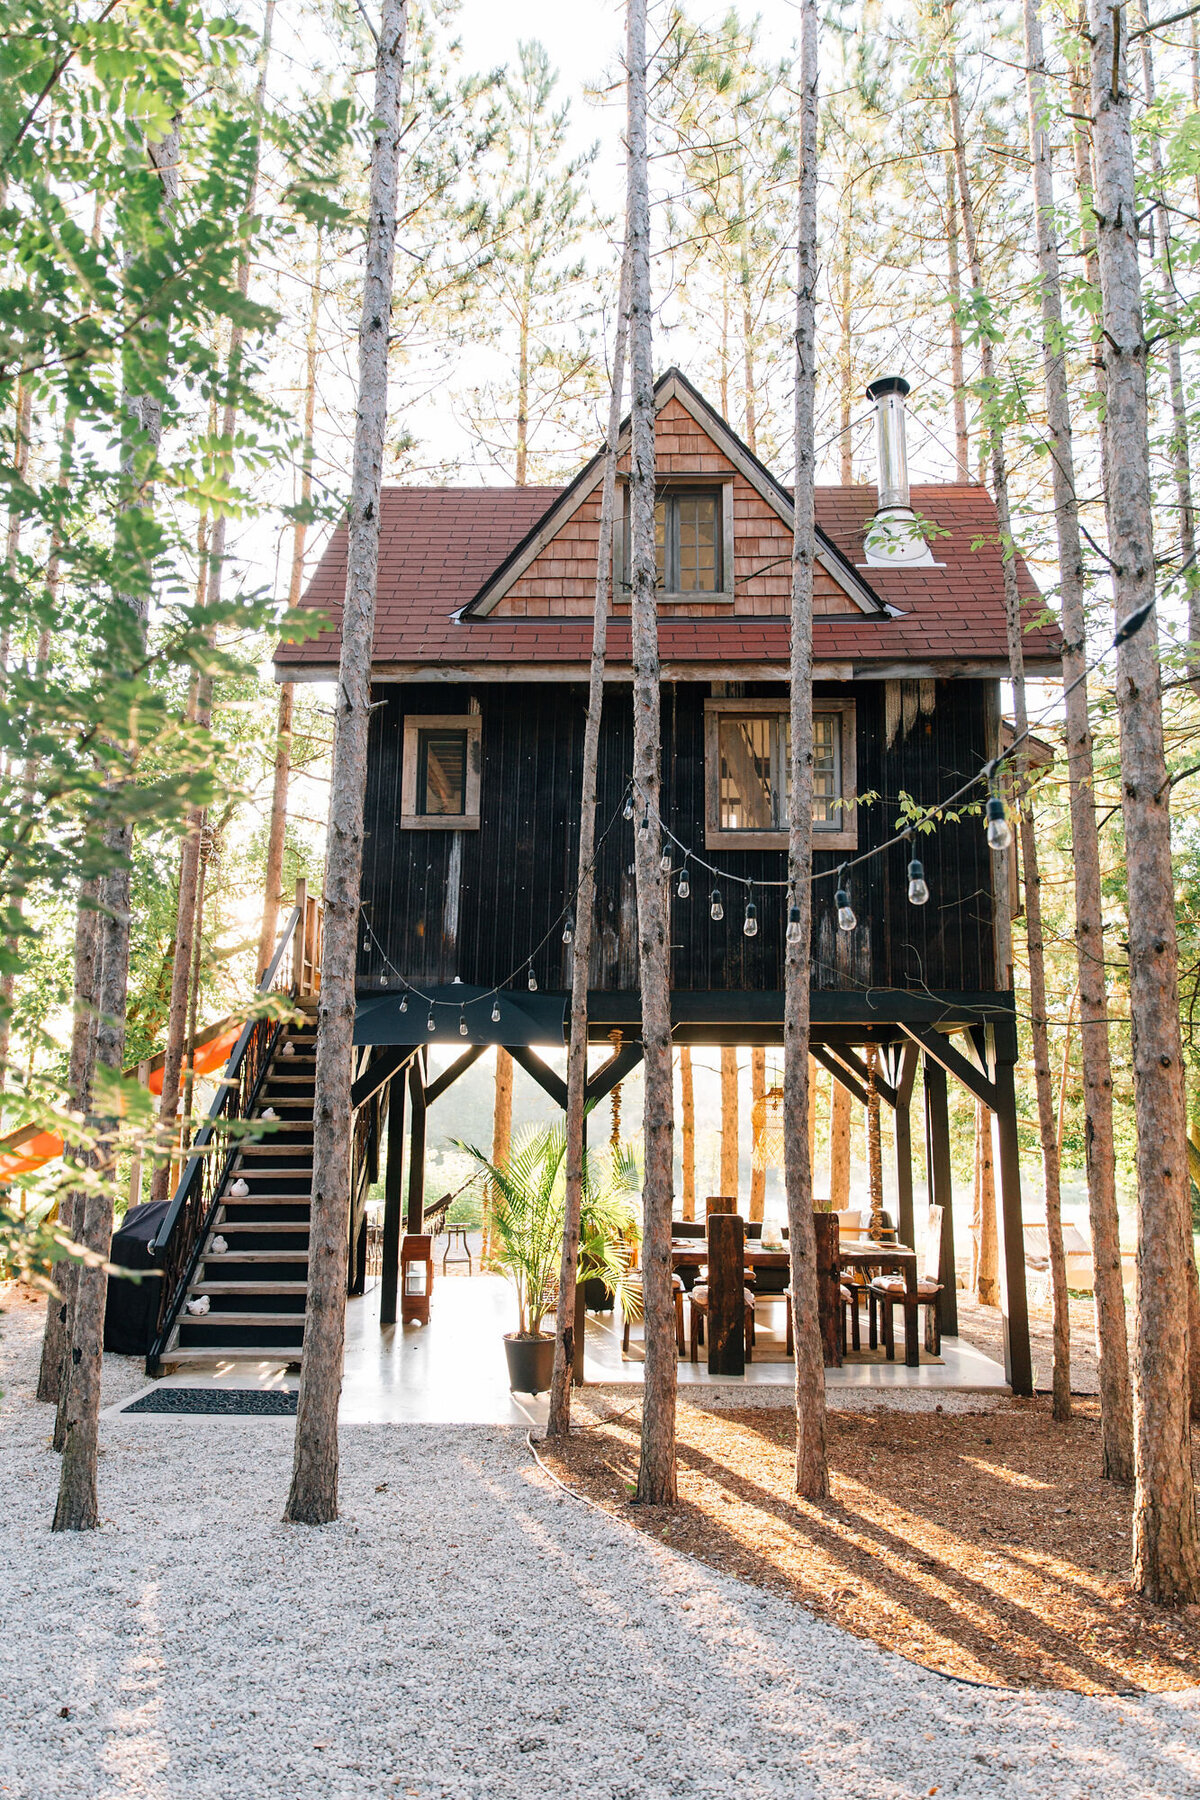 Treehouse-Cabin-Retreat-Vacation-Rental-Lynne-Knowlton-Lynneknowlton.com-391